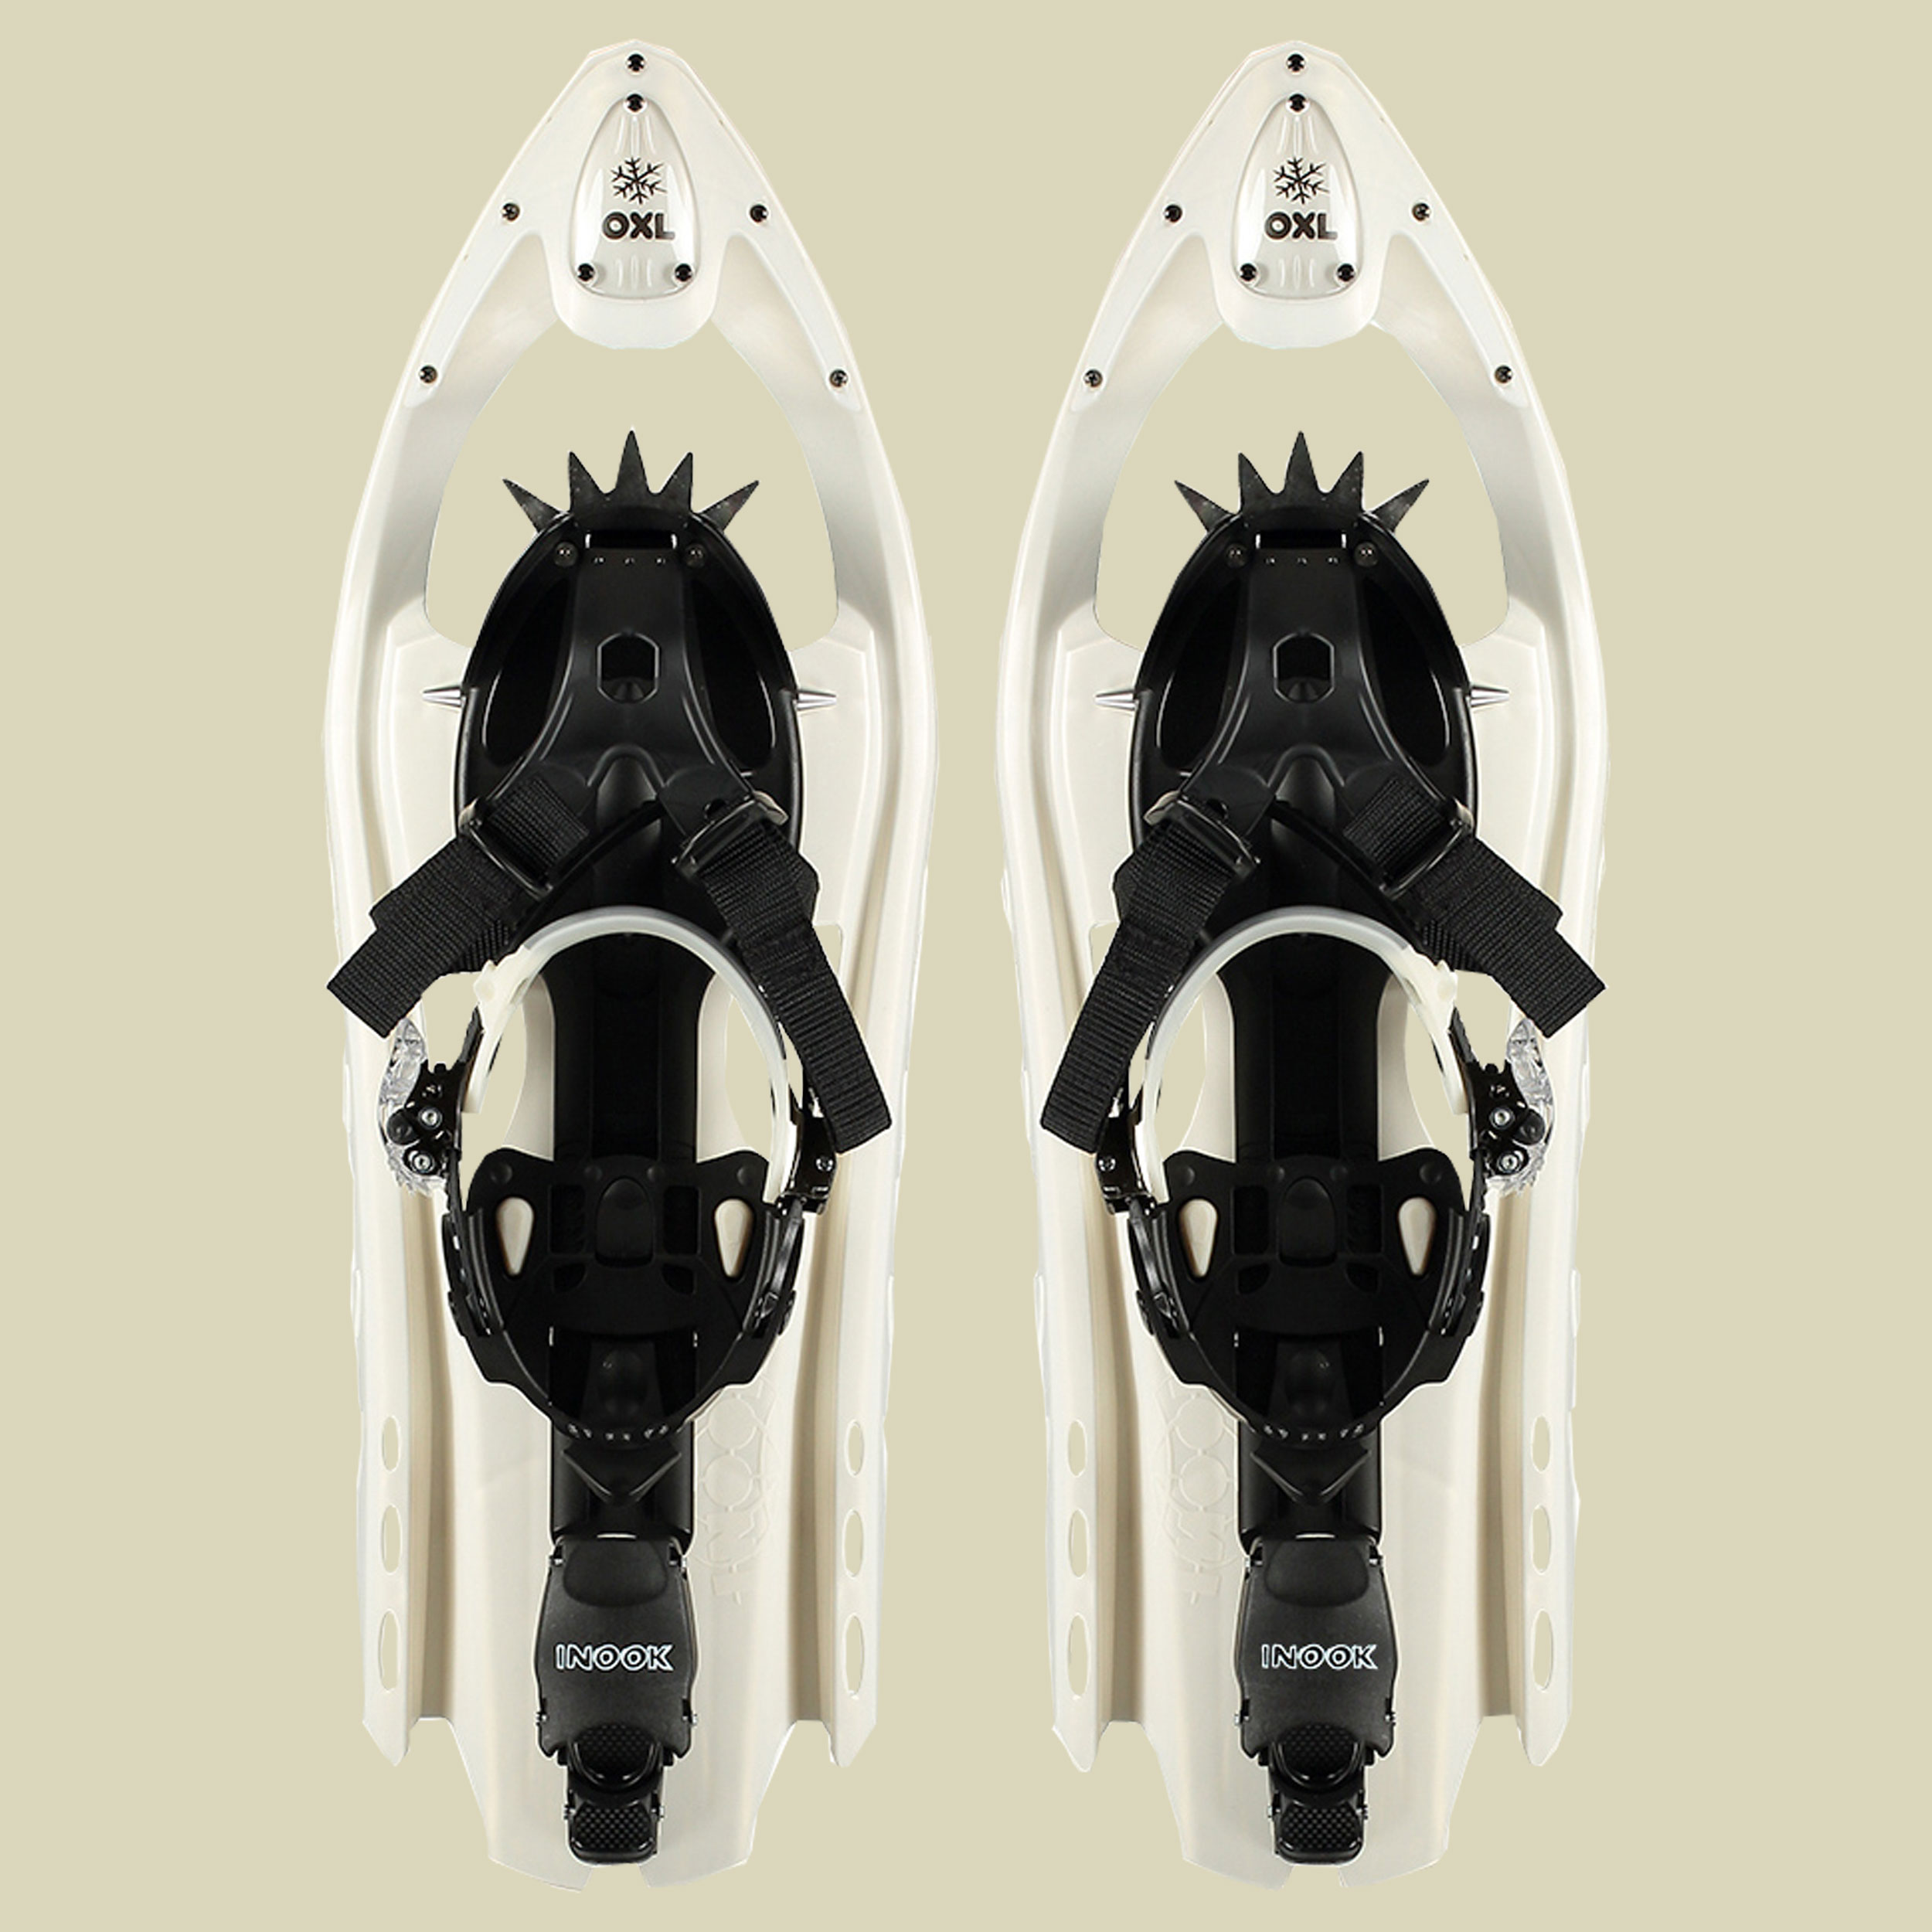 INOOK OXL für Schuhgröße: 34 – 42 Farbe: white/black